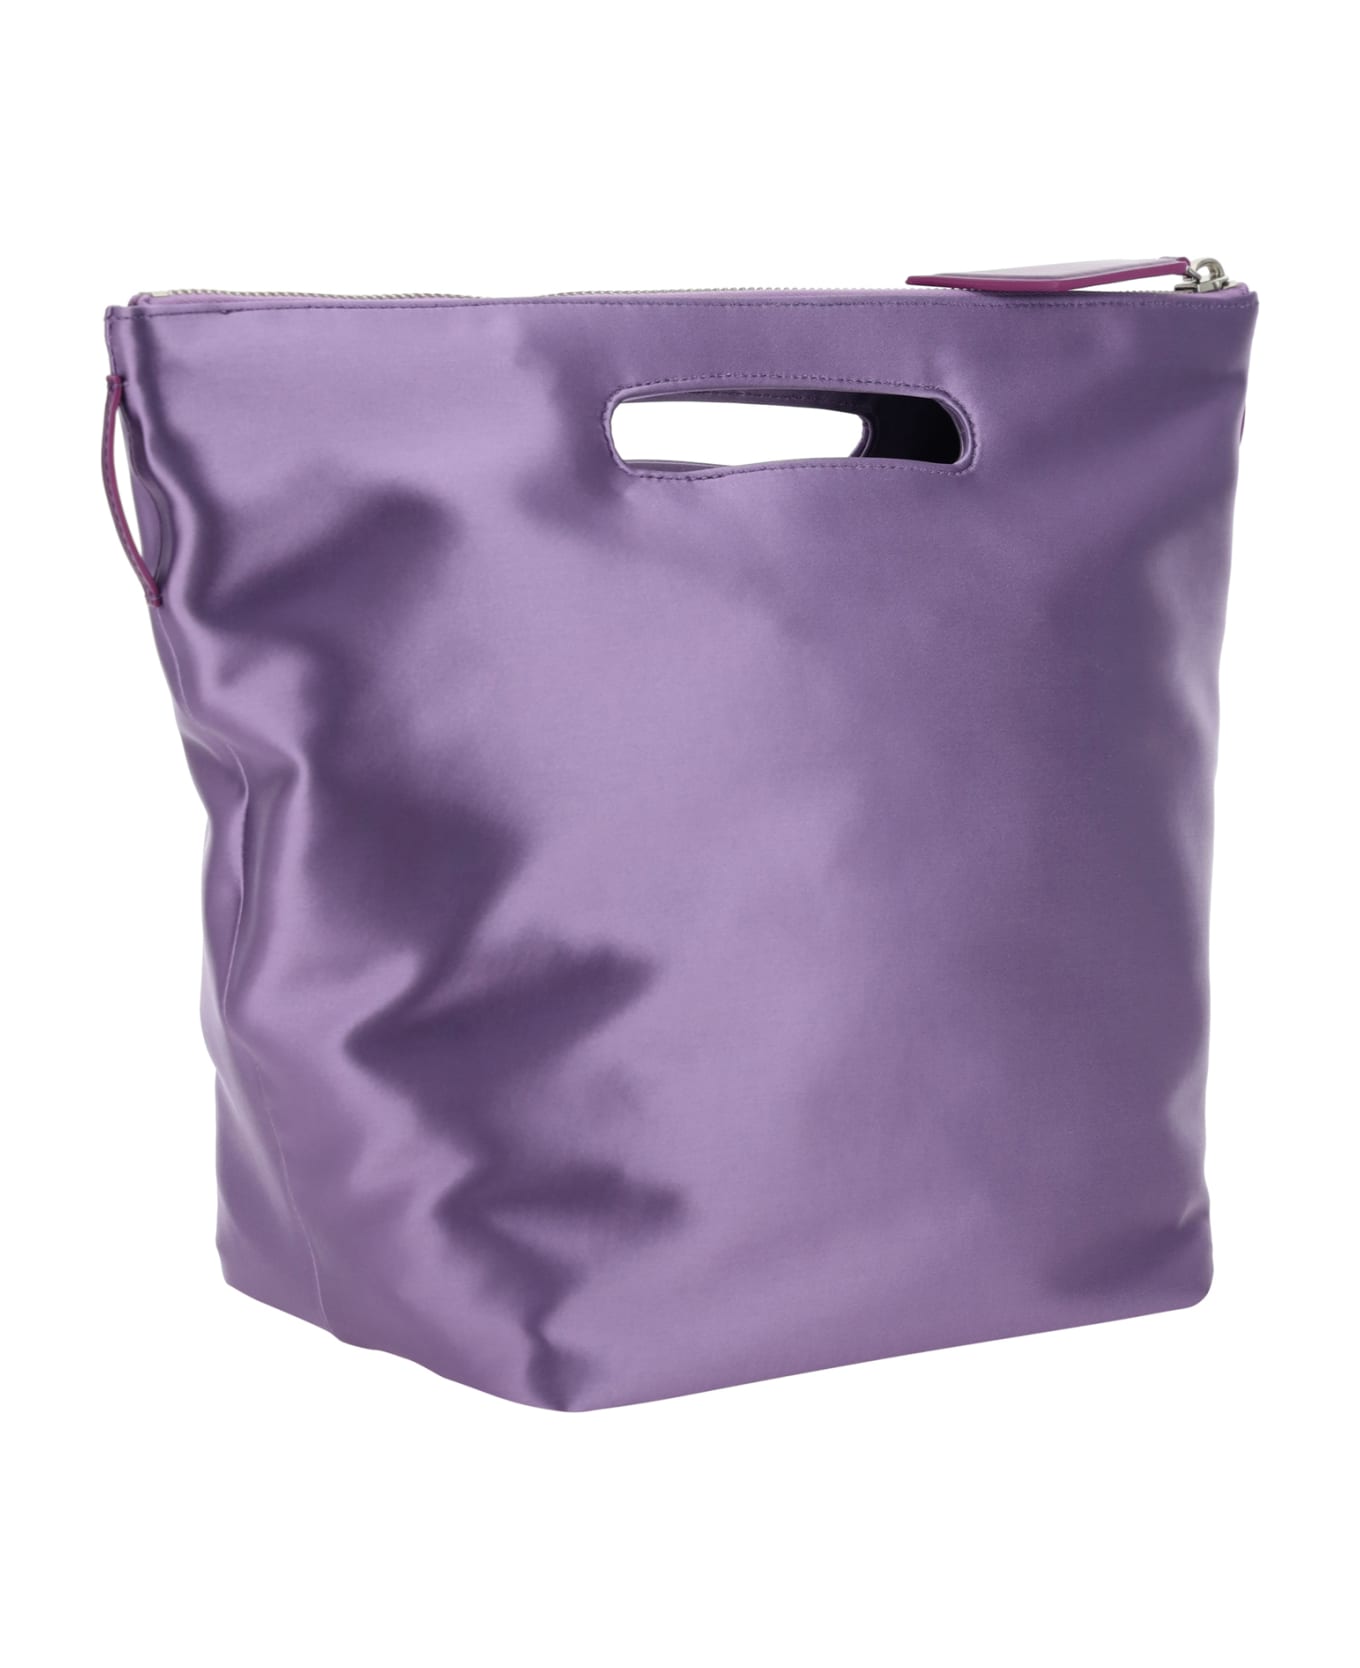 The Attico Via Dei Giardini 30 Handbag - Lilac